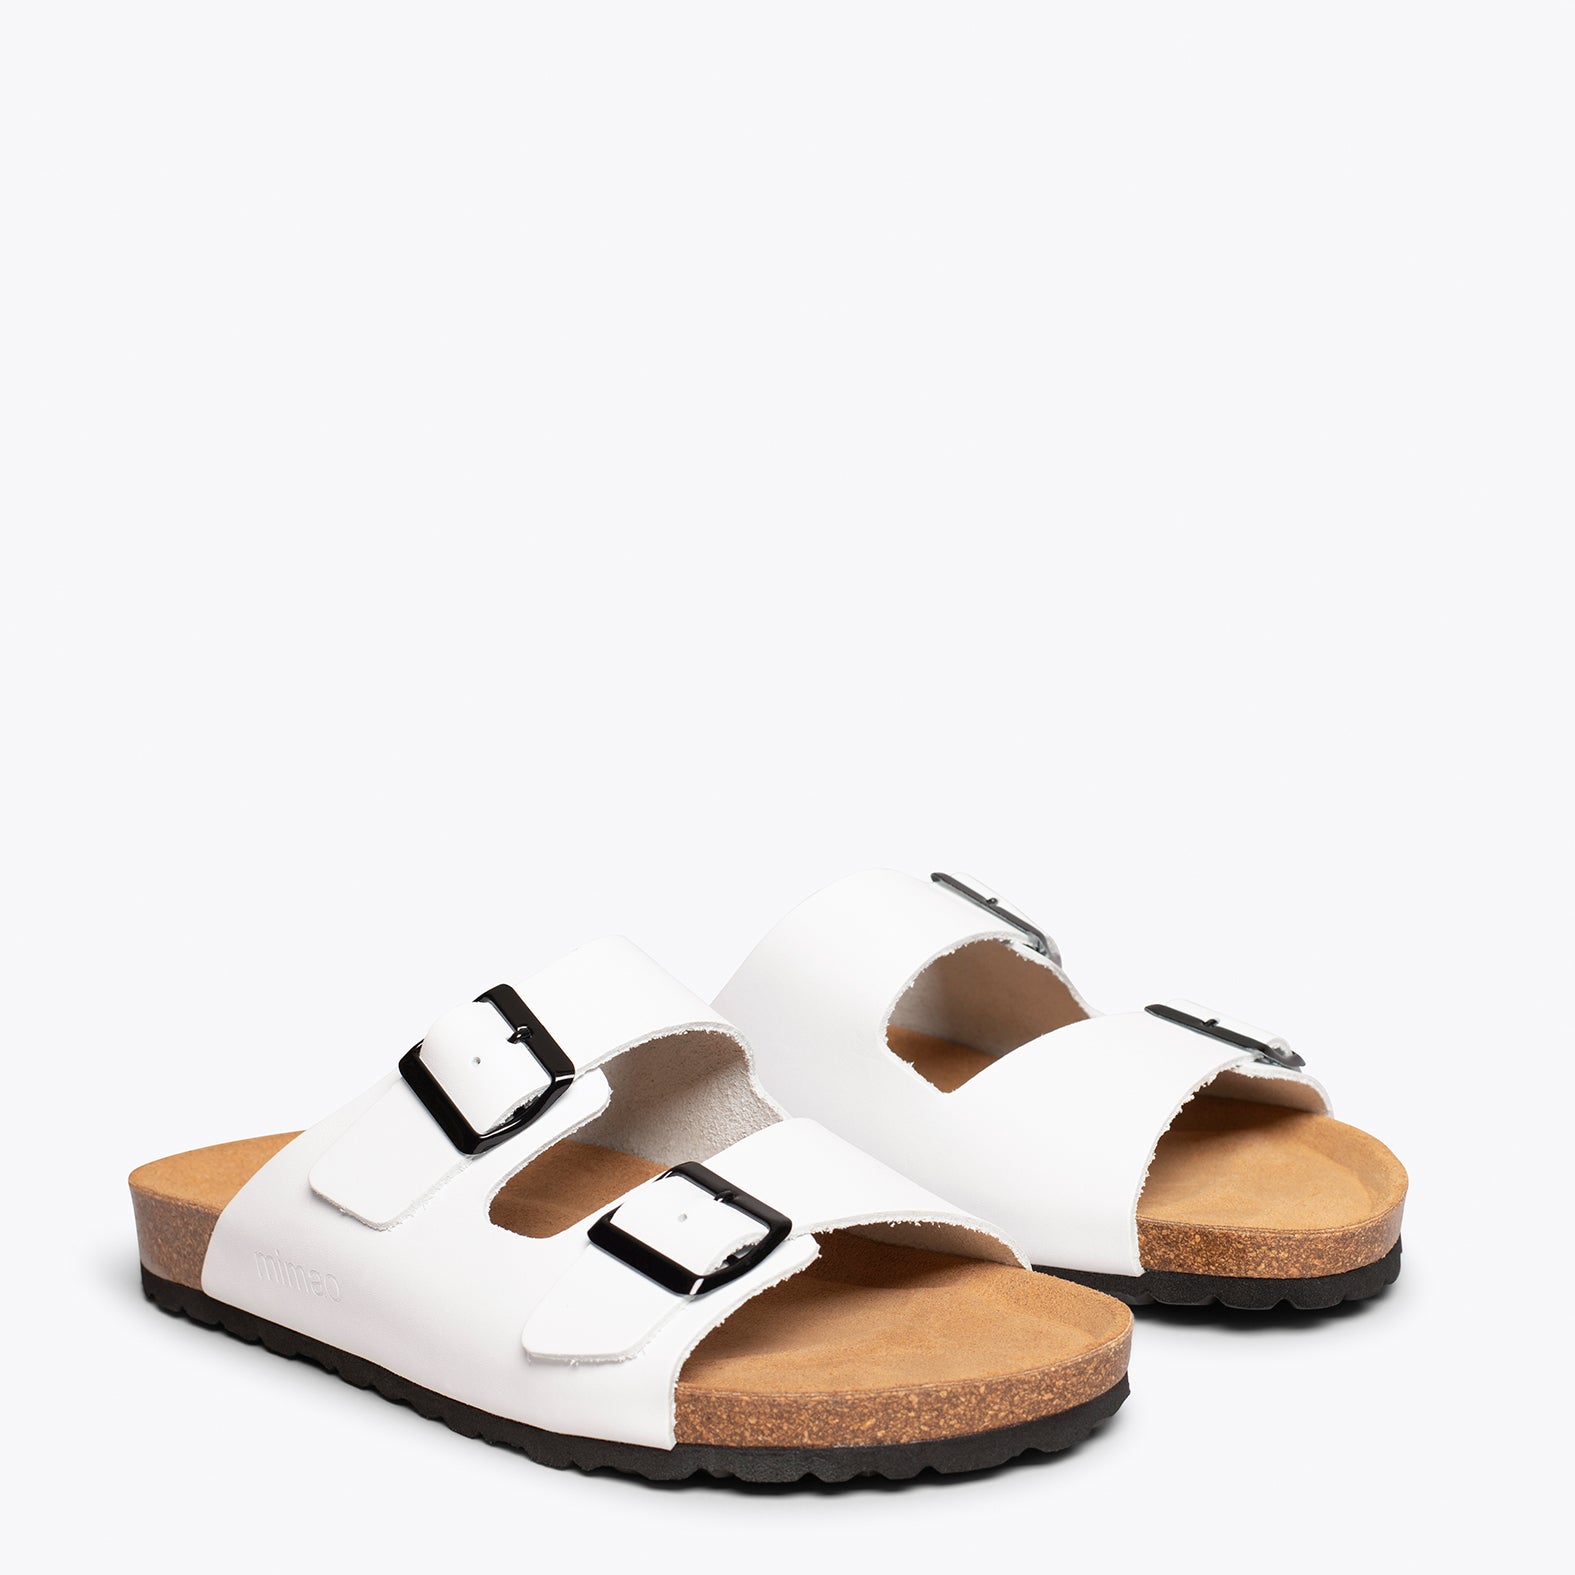 BIO – WHITE sandal with bio confort for men